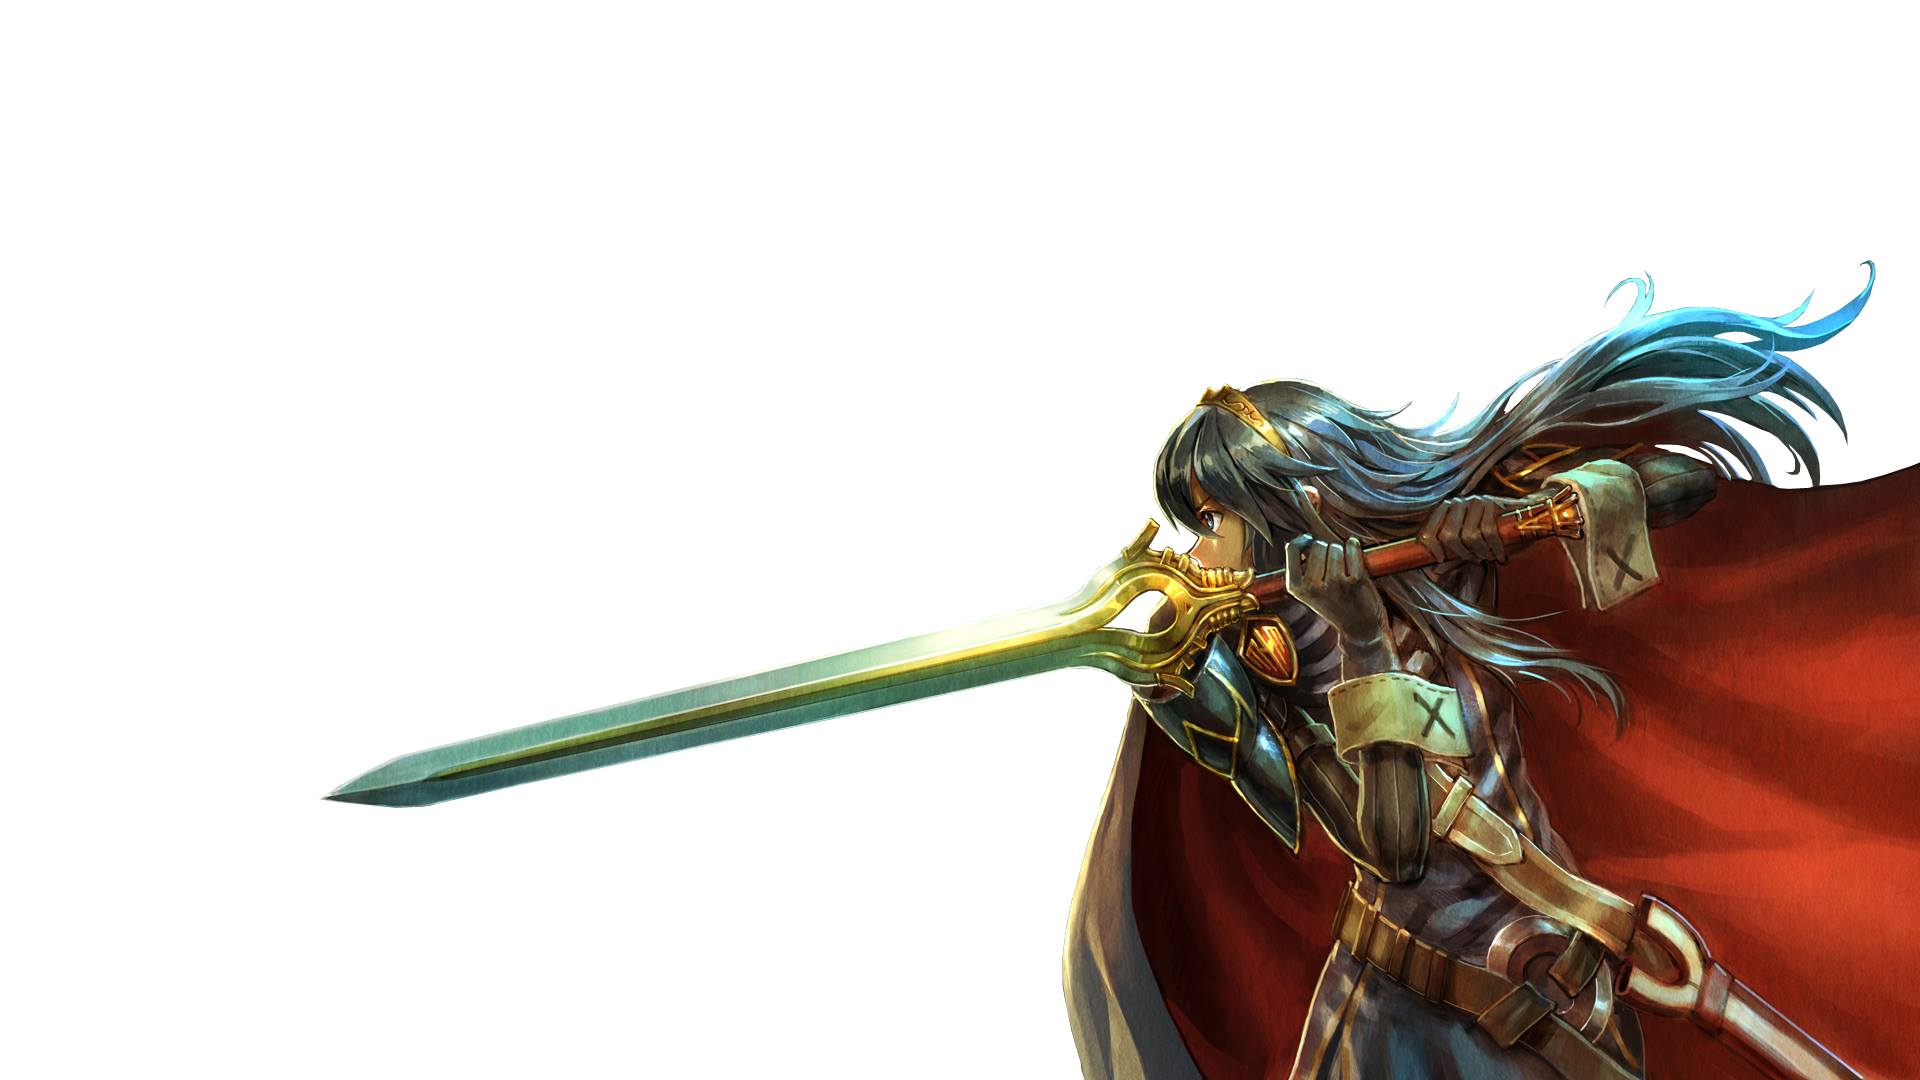 Video Game Fire Emblem Awakening HD Wallpaper | Background Image